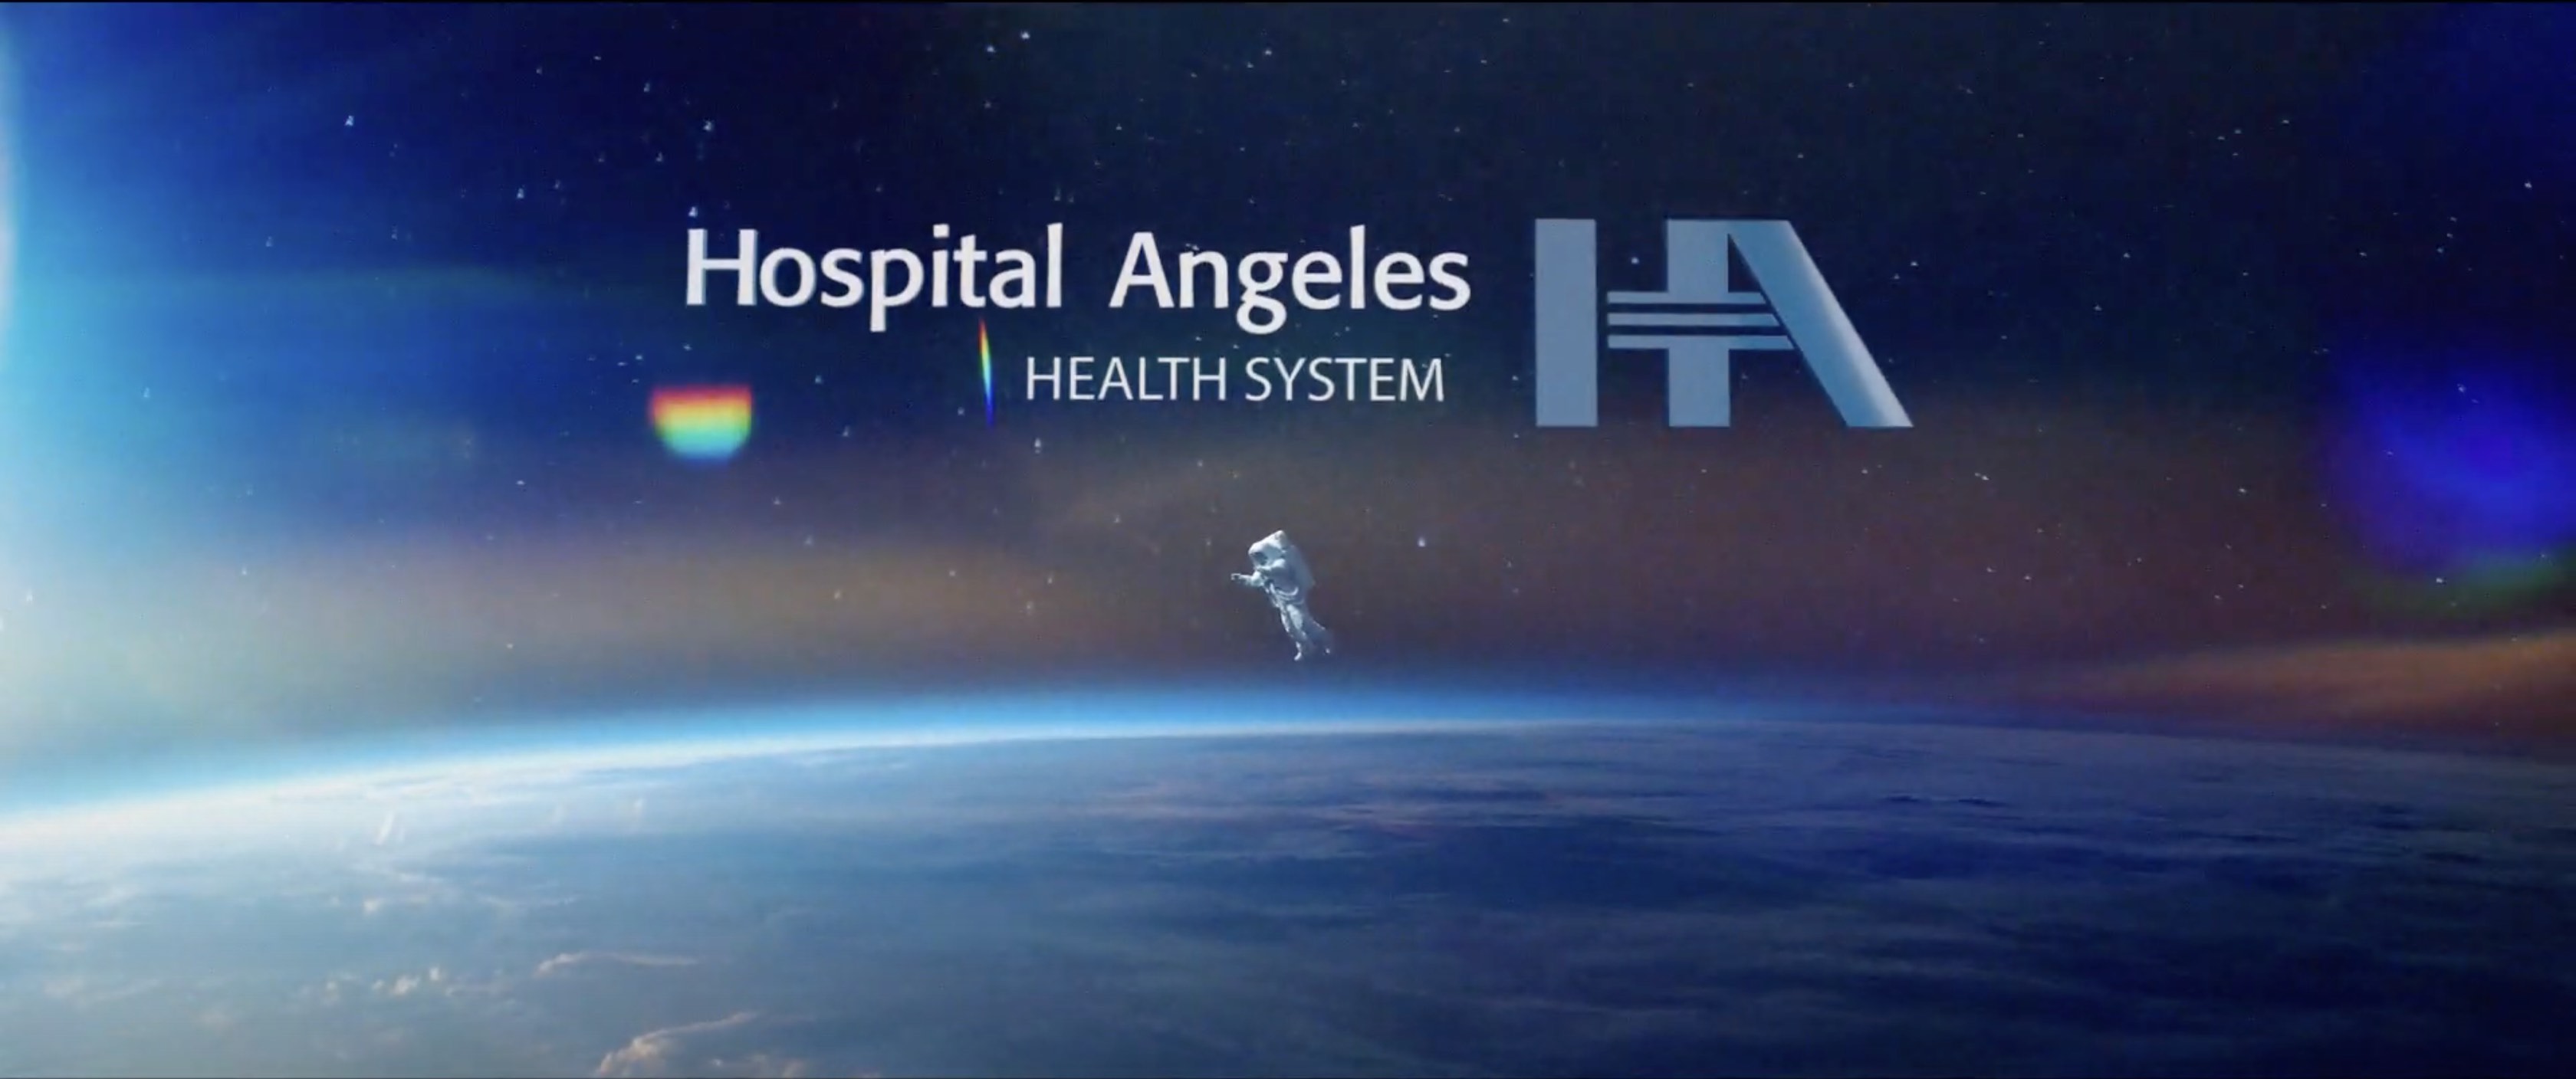 Planeta tierra con un astronauta flotando sobre él, con el logo de Hospital Angeles Health System de color blanco y azul